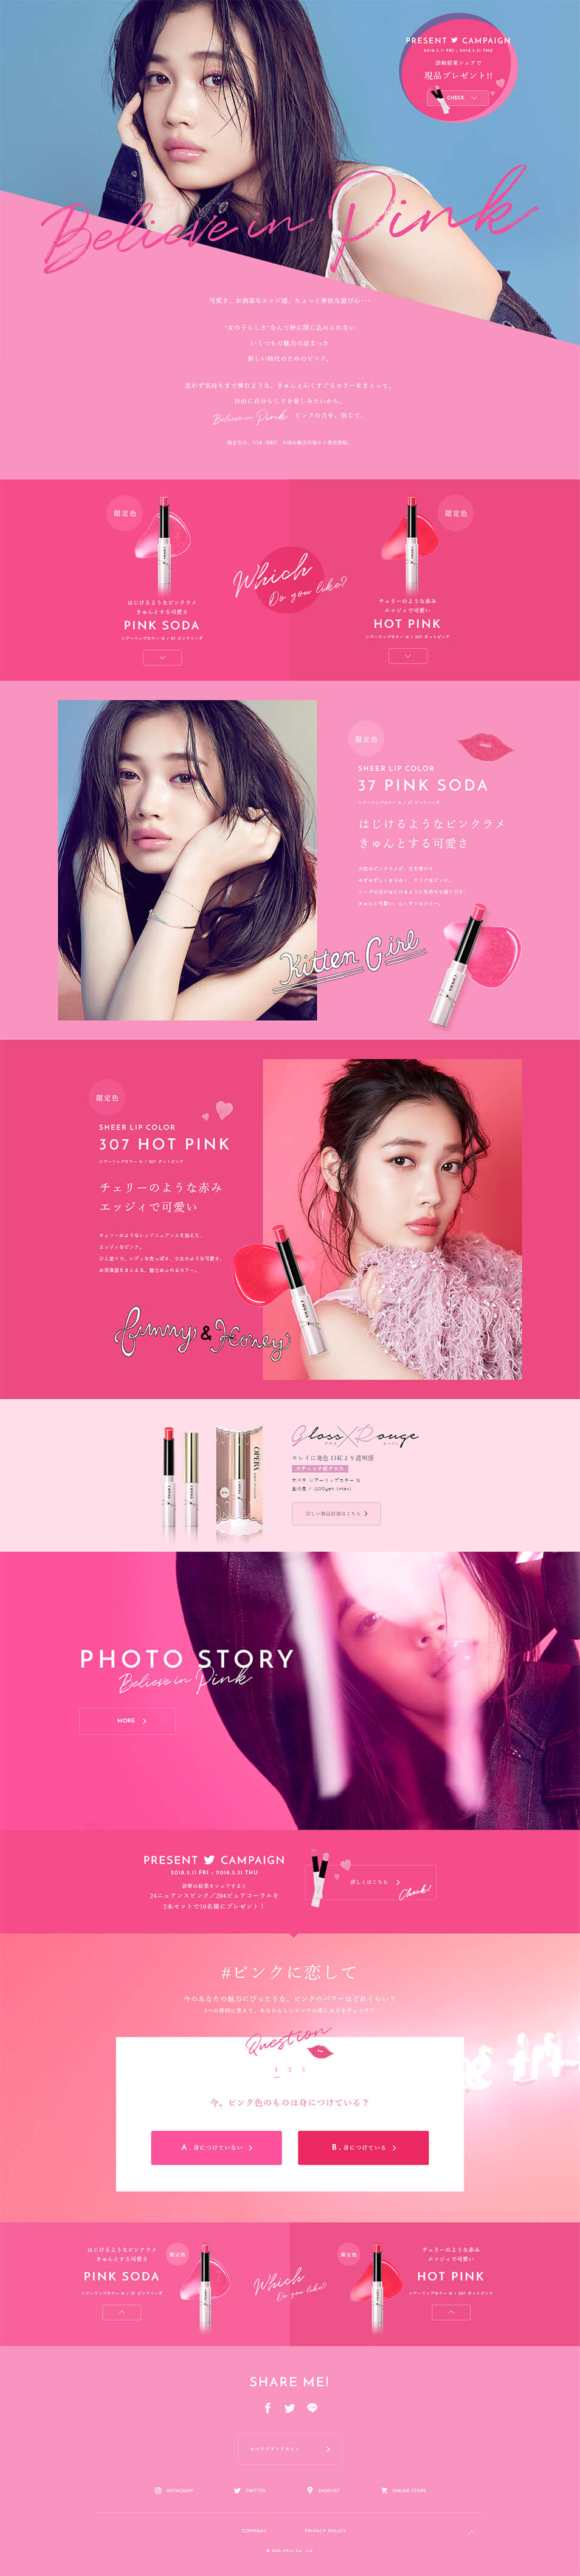 ランディングページ Lp ピンクに恋して コスメ 化粧品 コンタクトレンズ 自社サイト